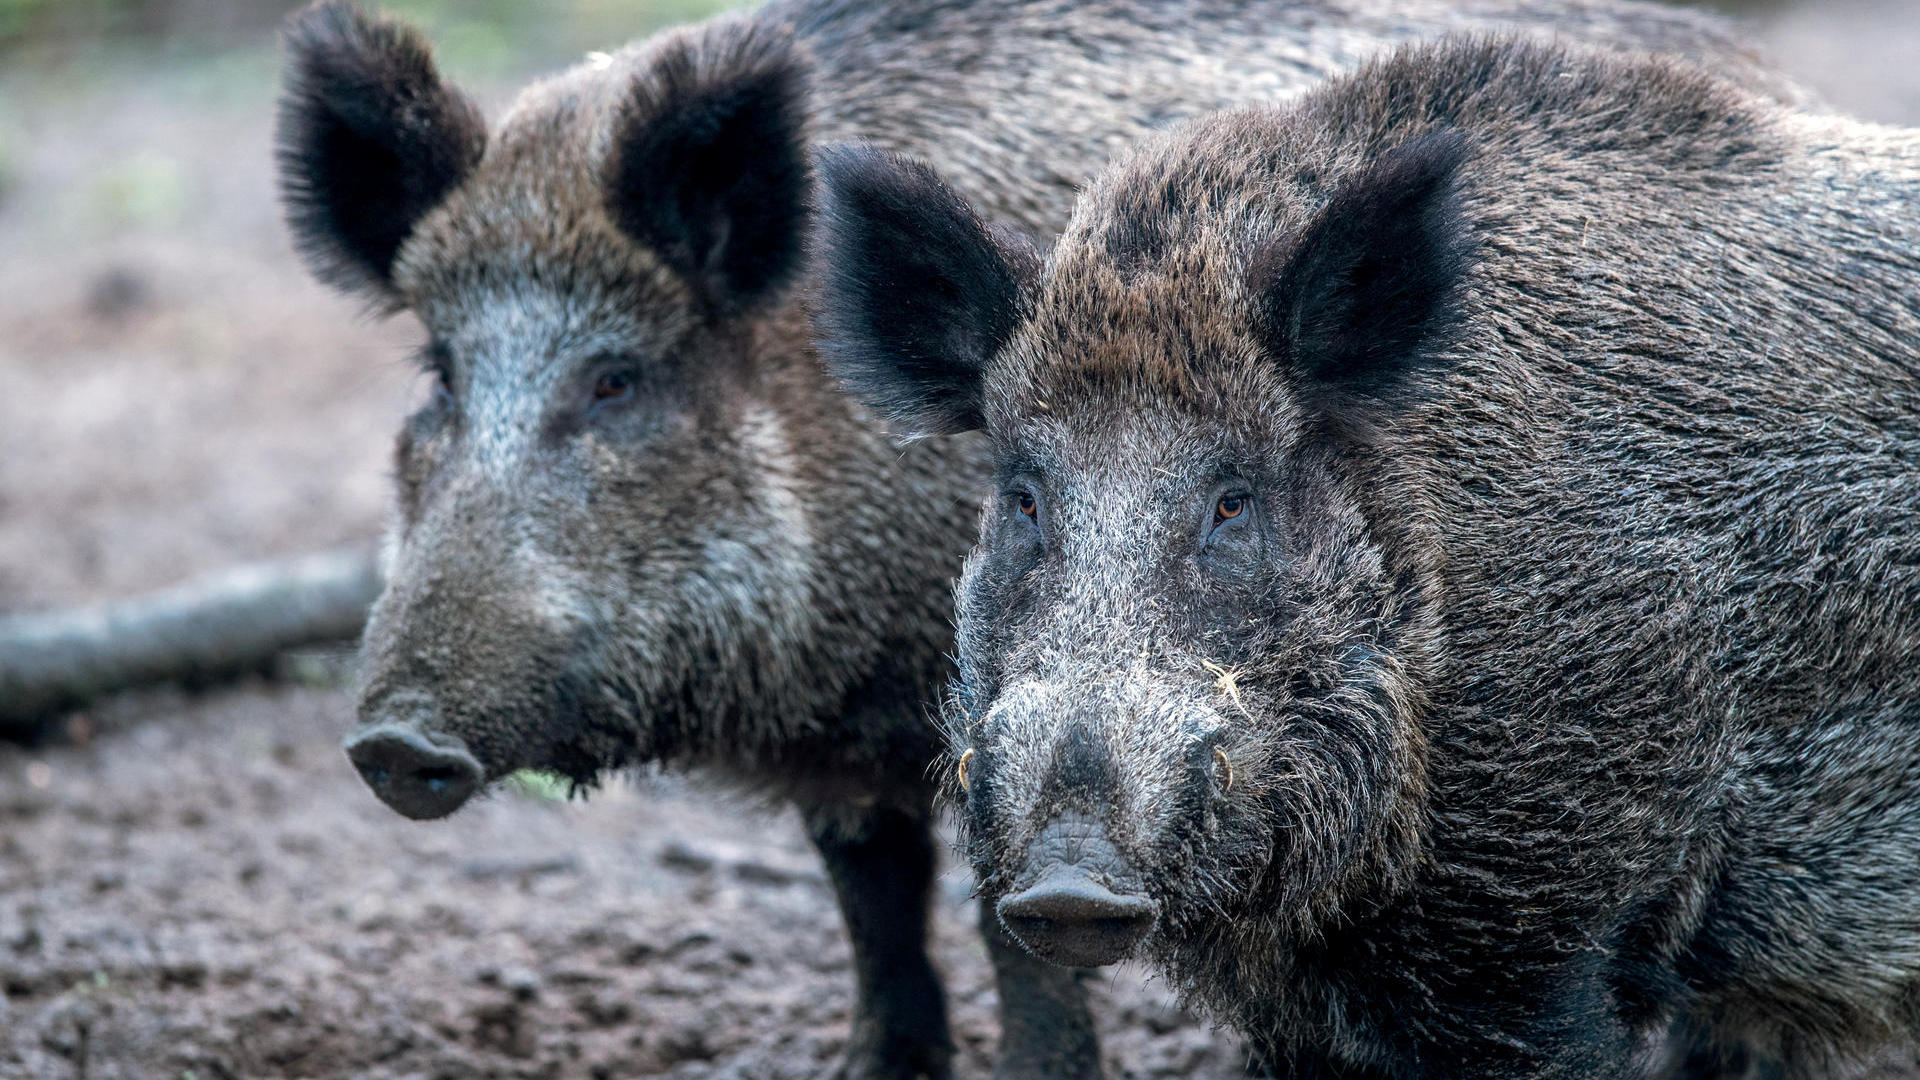 wildschweine stehen in einem wildgatter nur 60 kilometer entfernt von der deutschen grenze sind in belgien faelle von afrikanischer schweinepest festgestellt worden